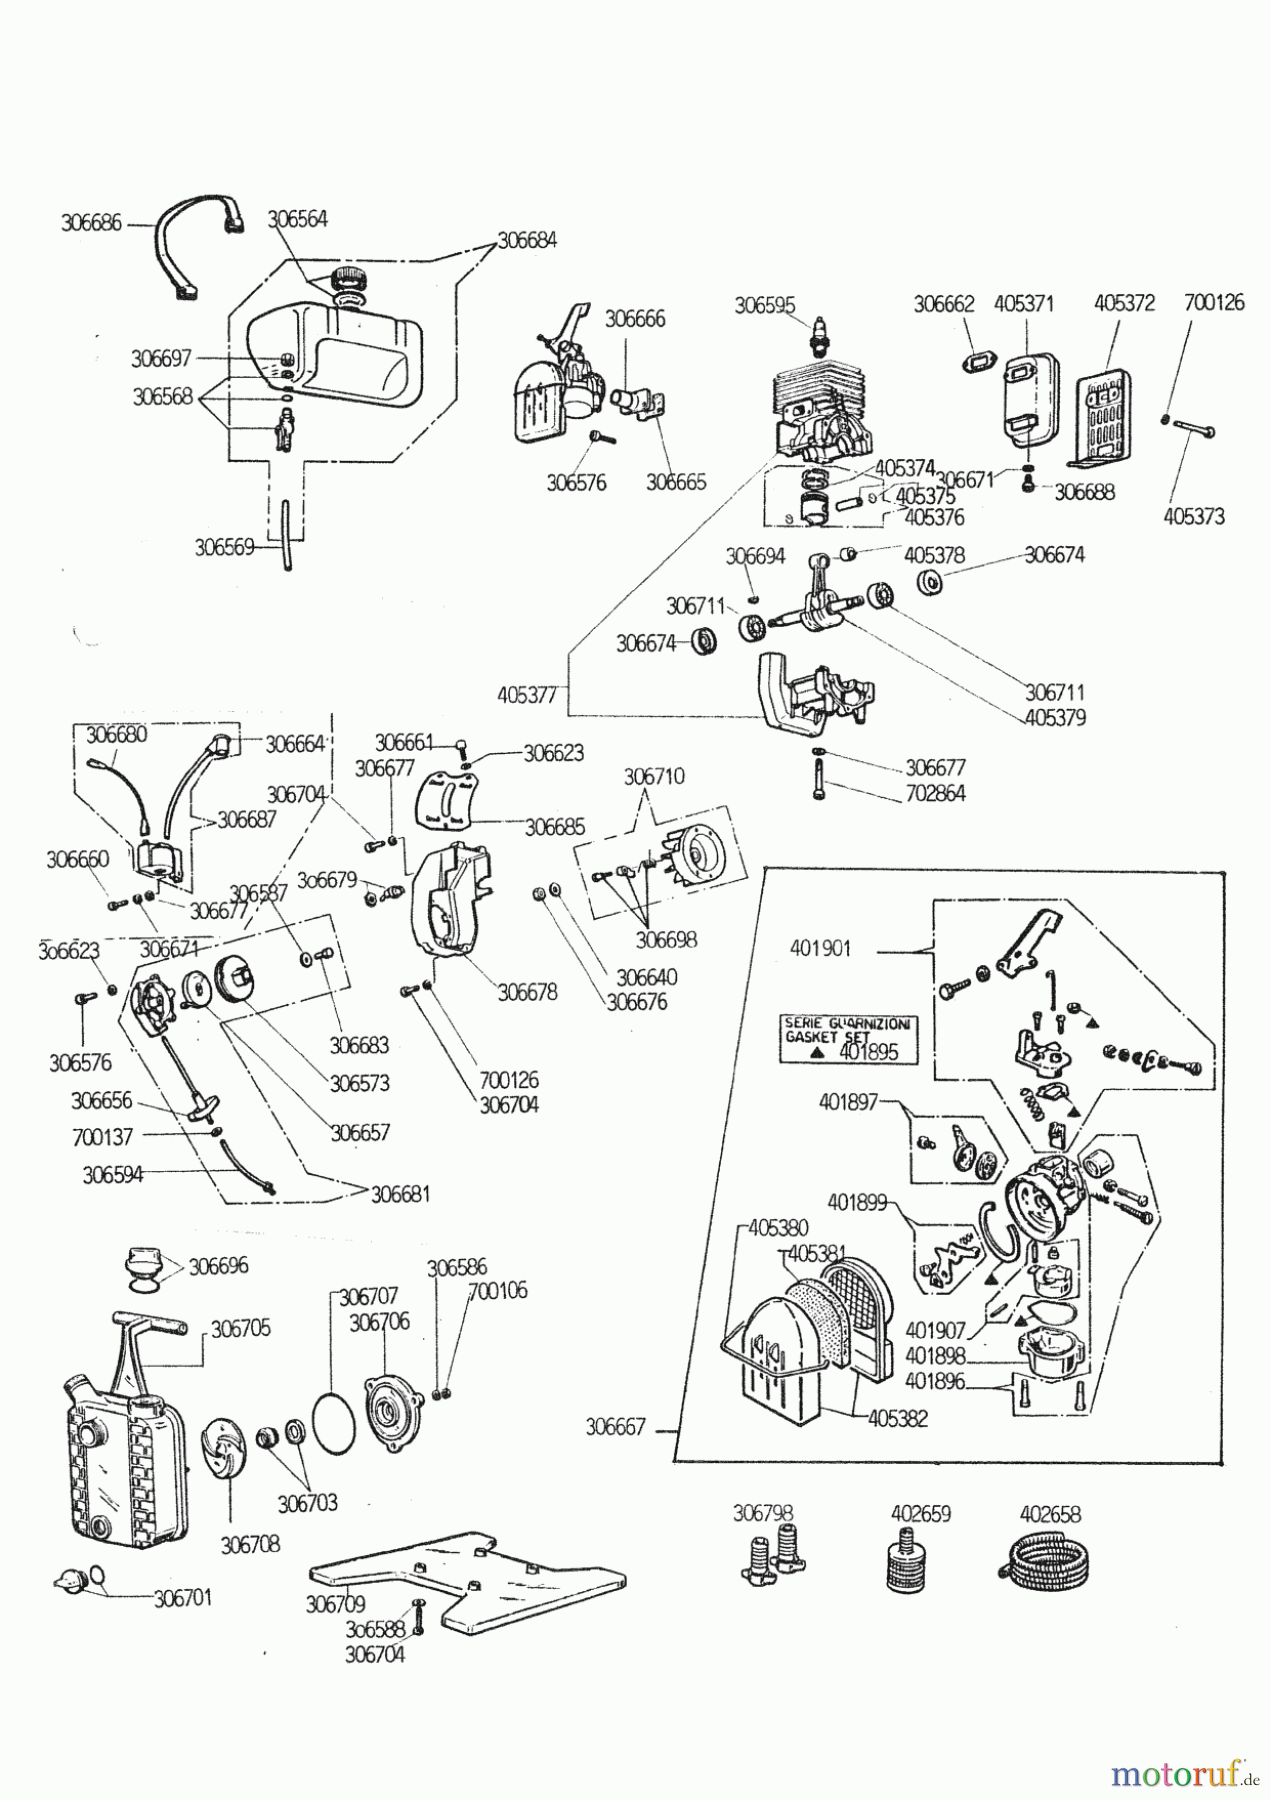  AL-KO Wassertechnik Oberflächenpumpen SA 18  01/1995 Seite 1